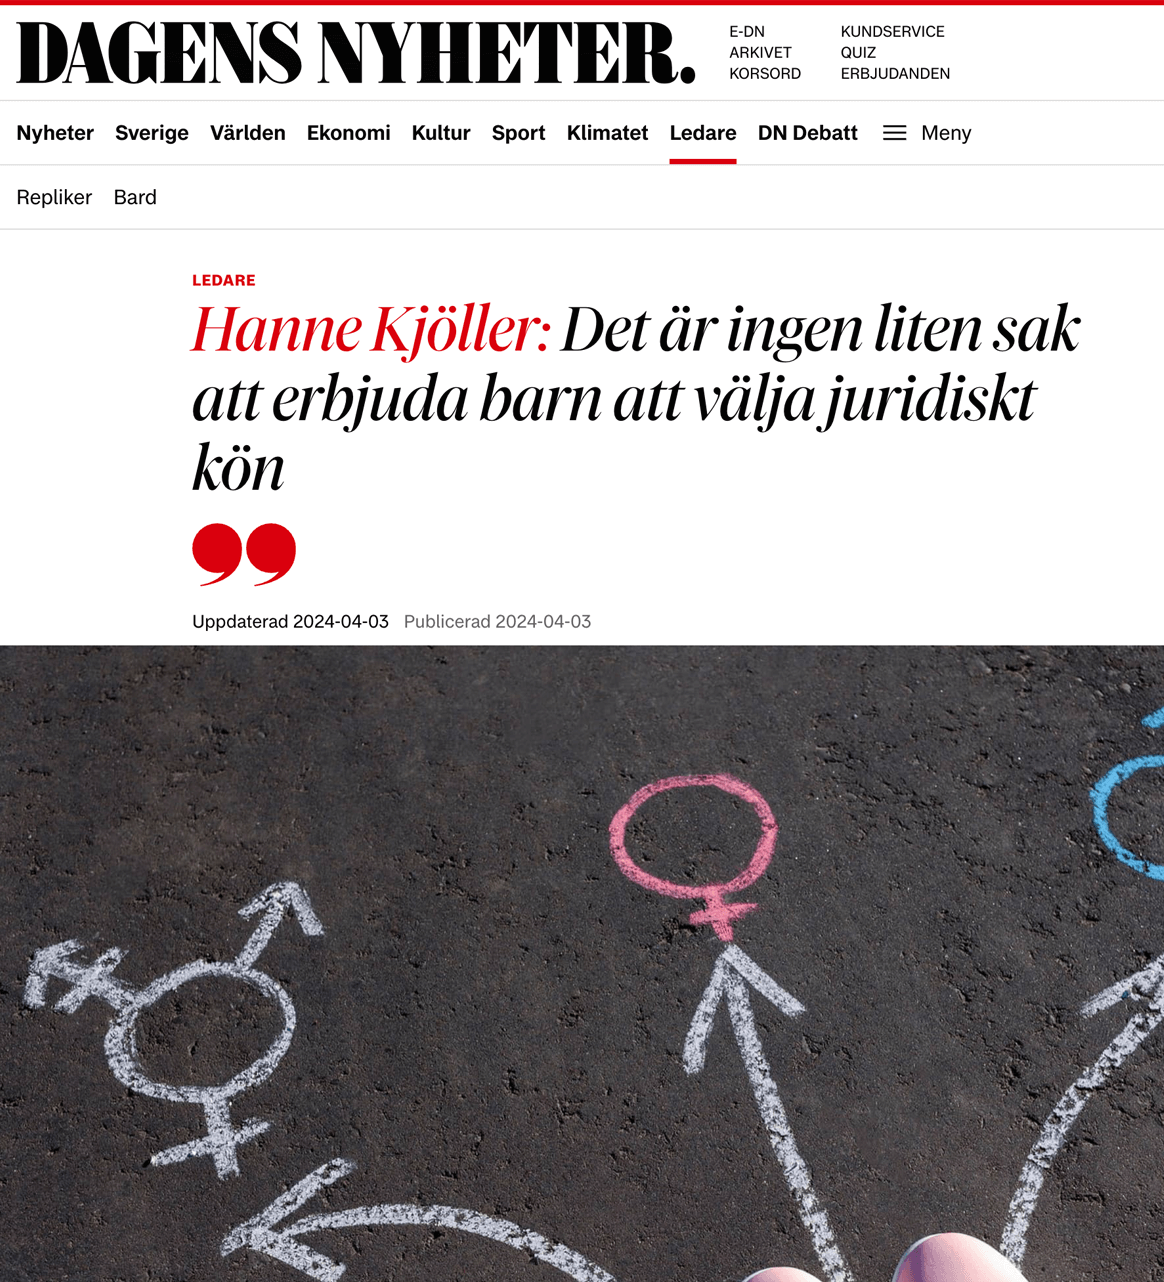 Hanne Kjöller: Det är ingen liten sak att erbjuda barn att välja juridiskt kön